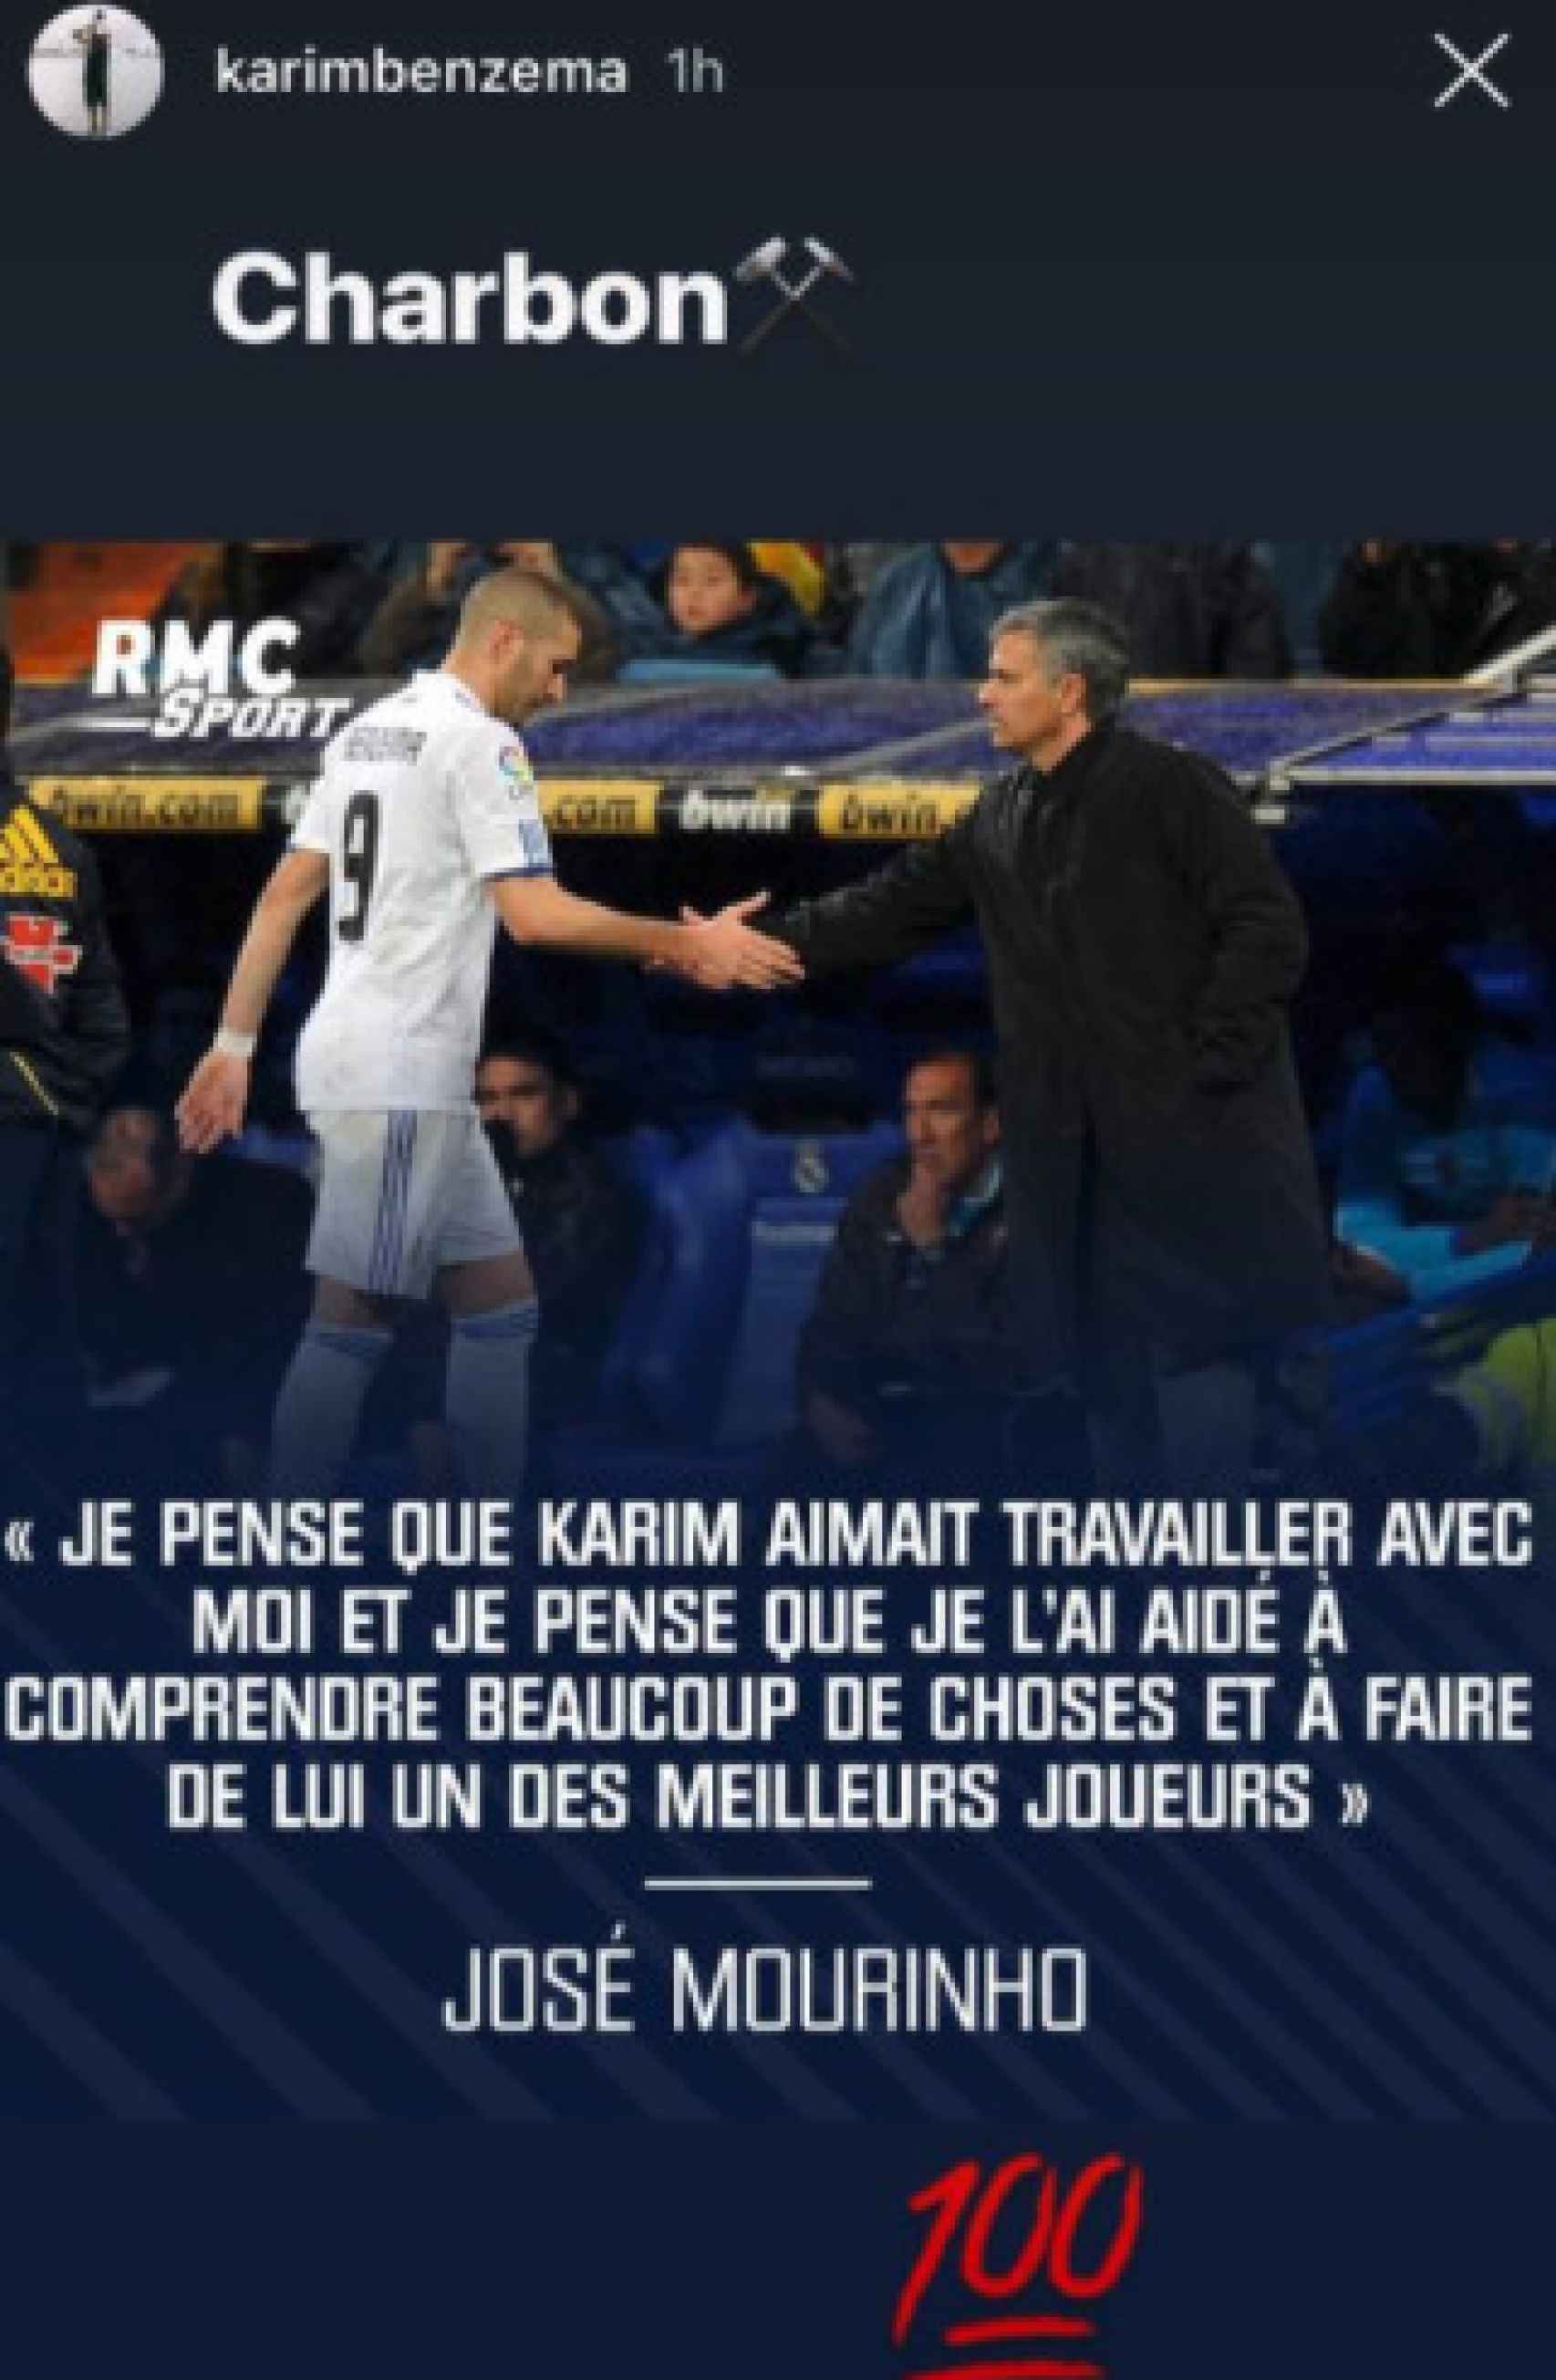 El mensaje de Mourinho a Benzema